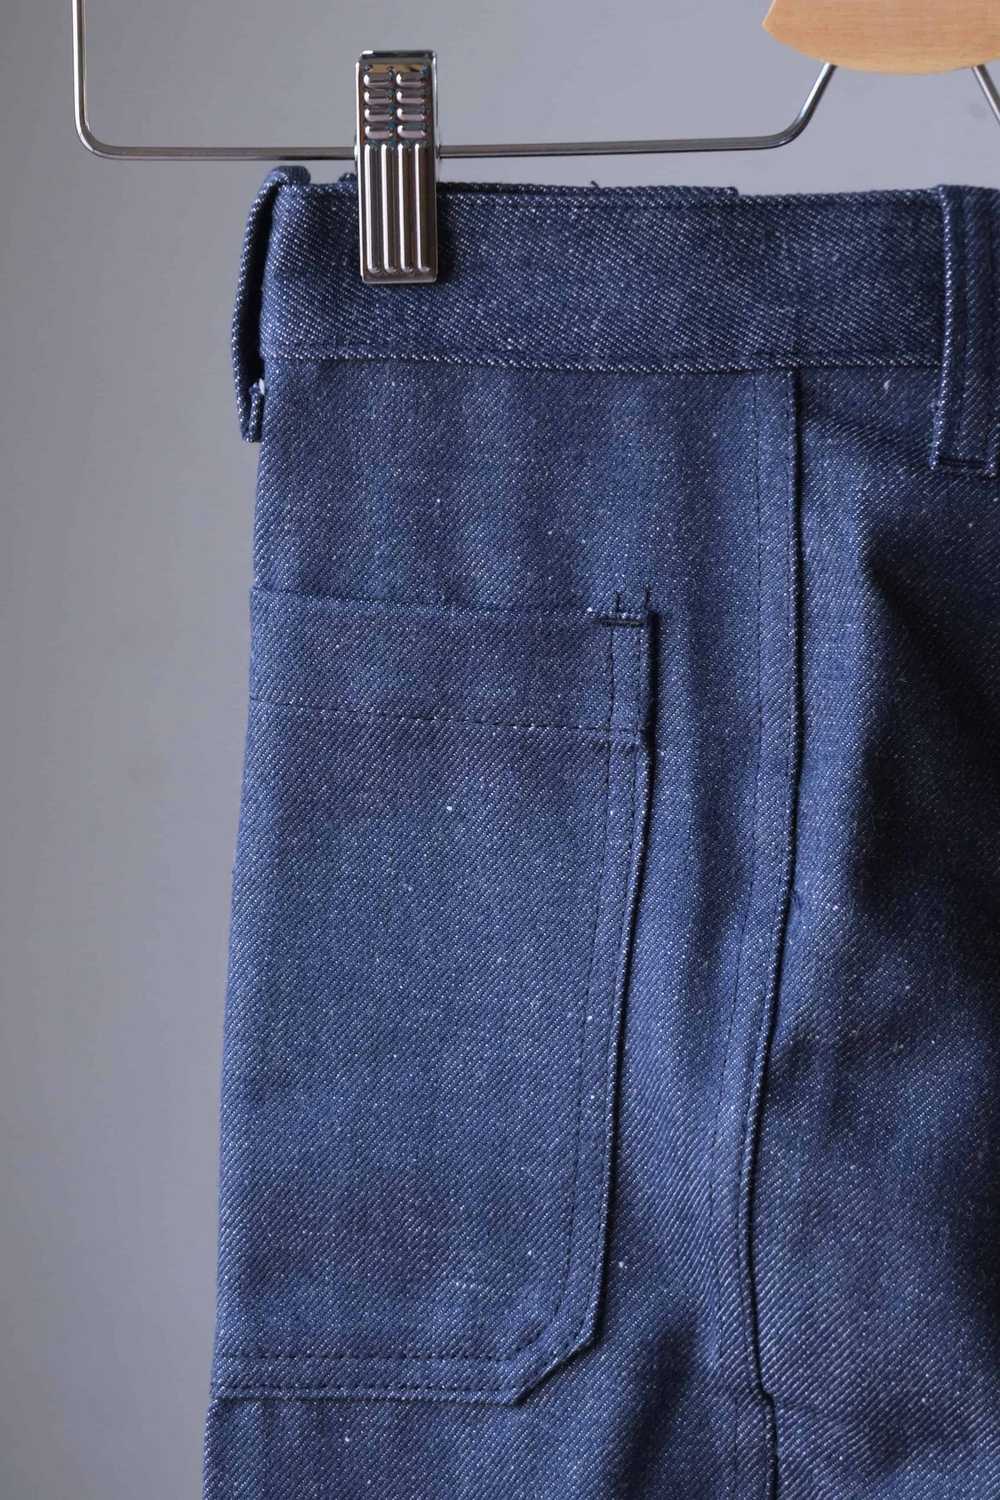 LUCKY PARIS Vintage 70's Wide Leg Jeans - image 3